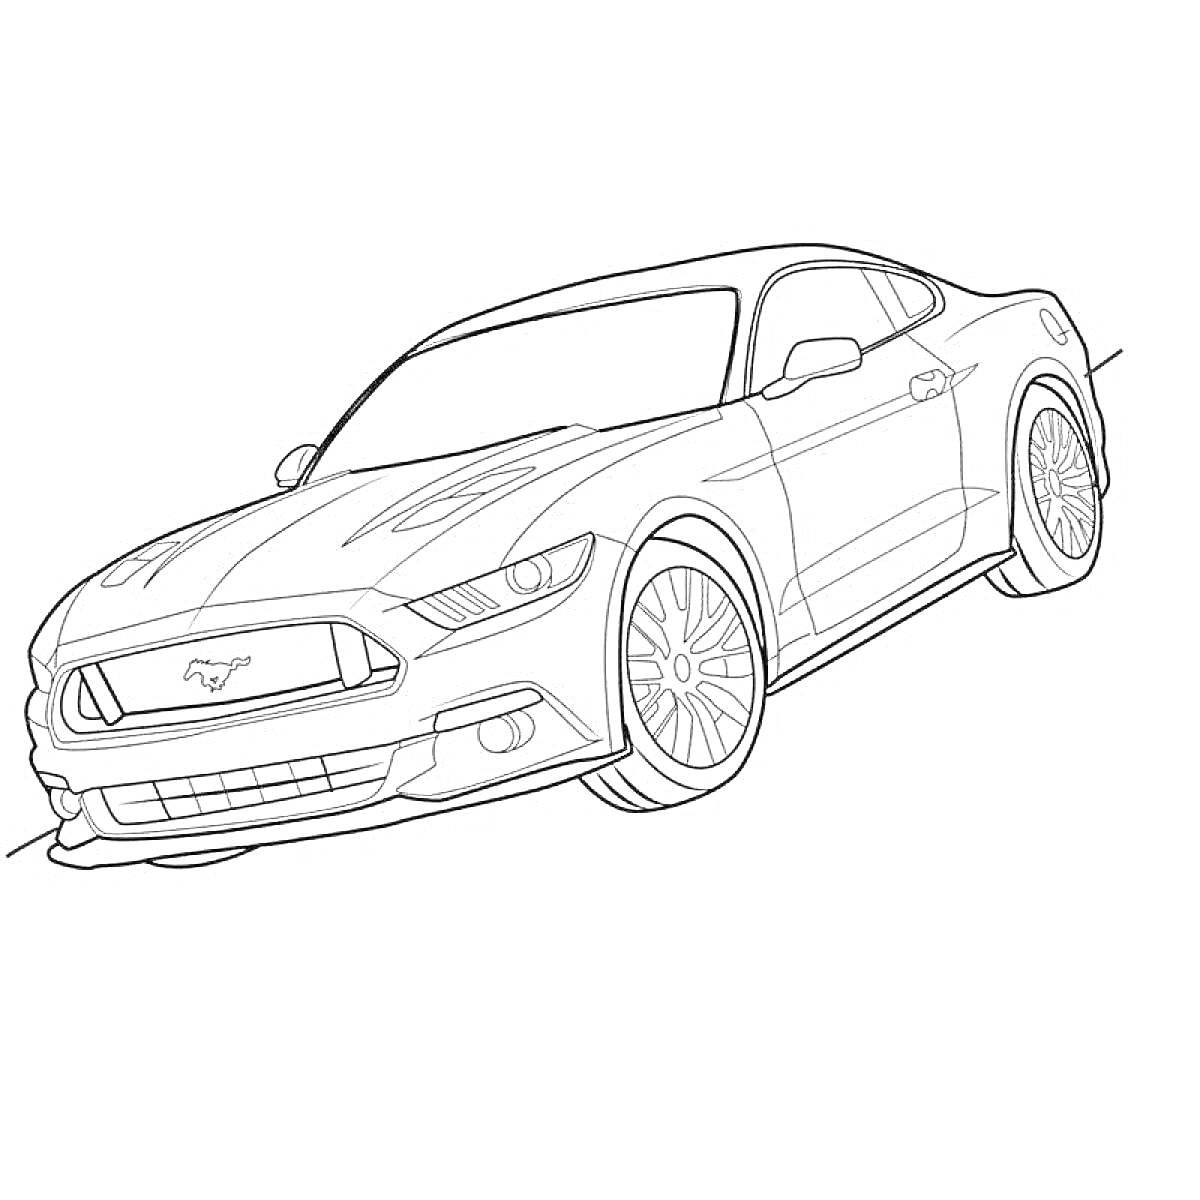 Раскраска Ford Mustang, вид спереди и чуть сбоку, спортивный автомобиль с деталями кузова, колесами и эмблемой логотипа